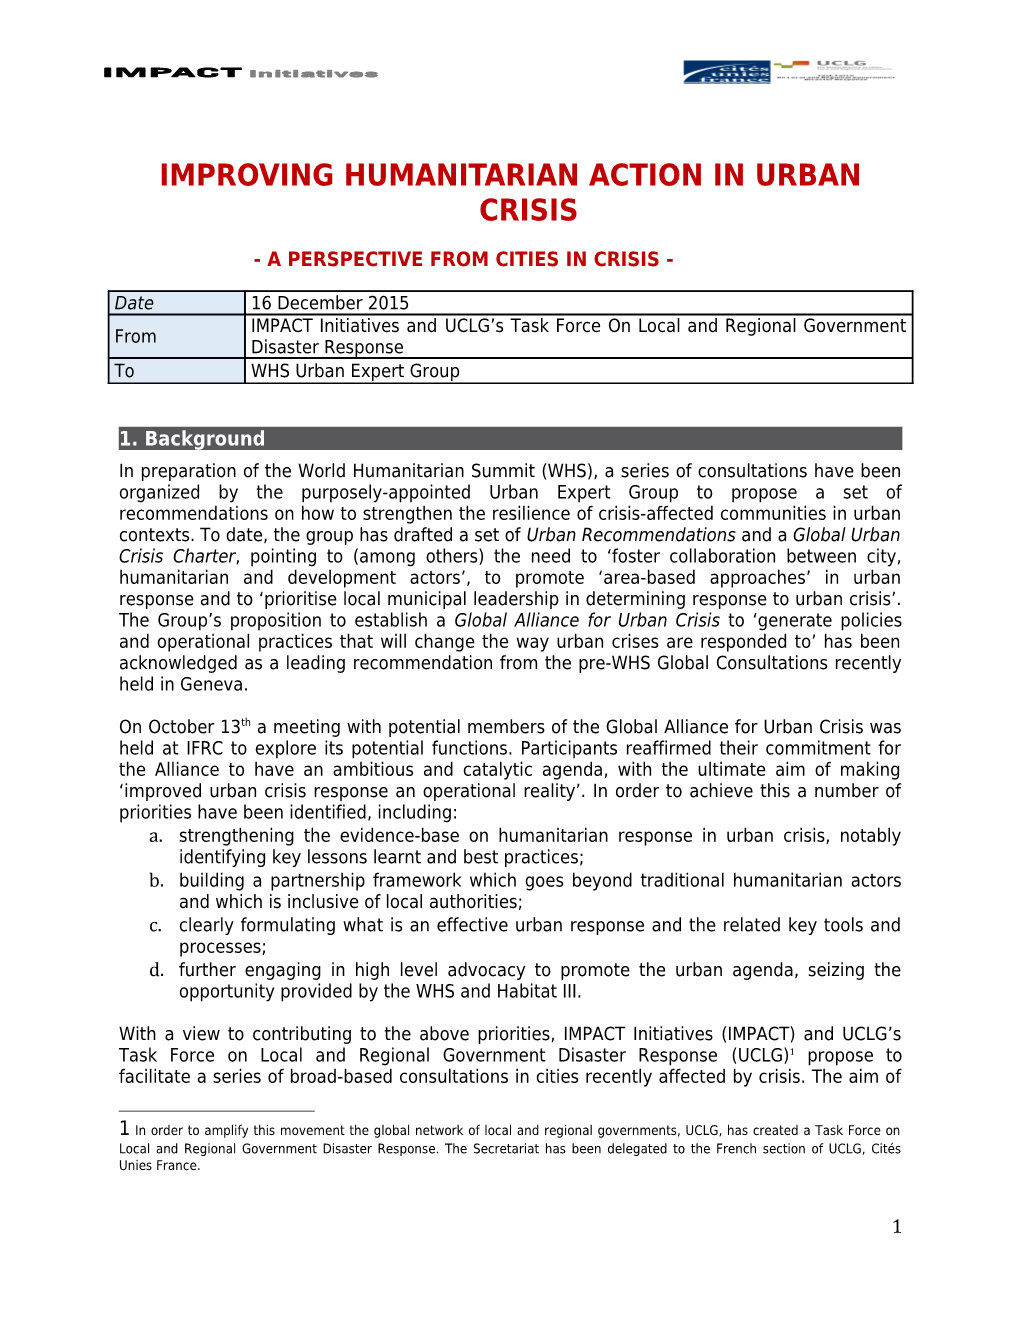 IMPROVING HUMANITARIAN Action in URBAN CRISIS